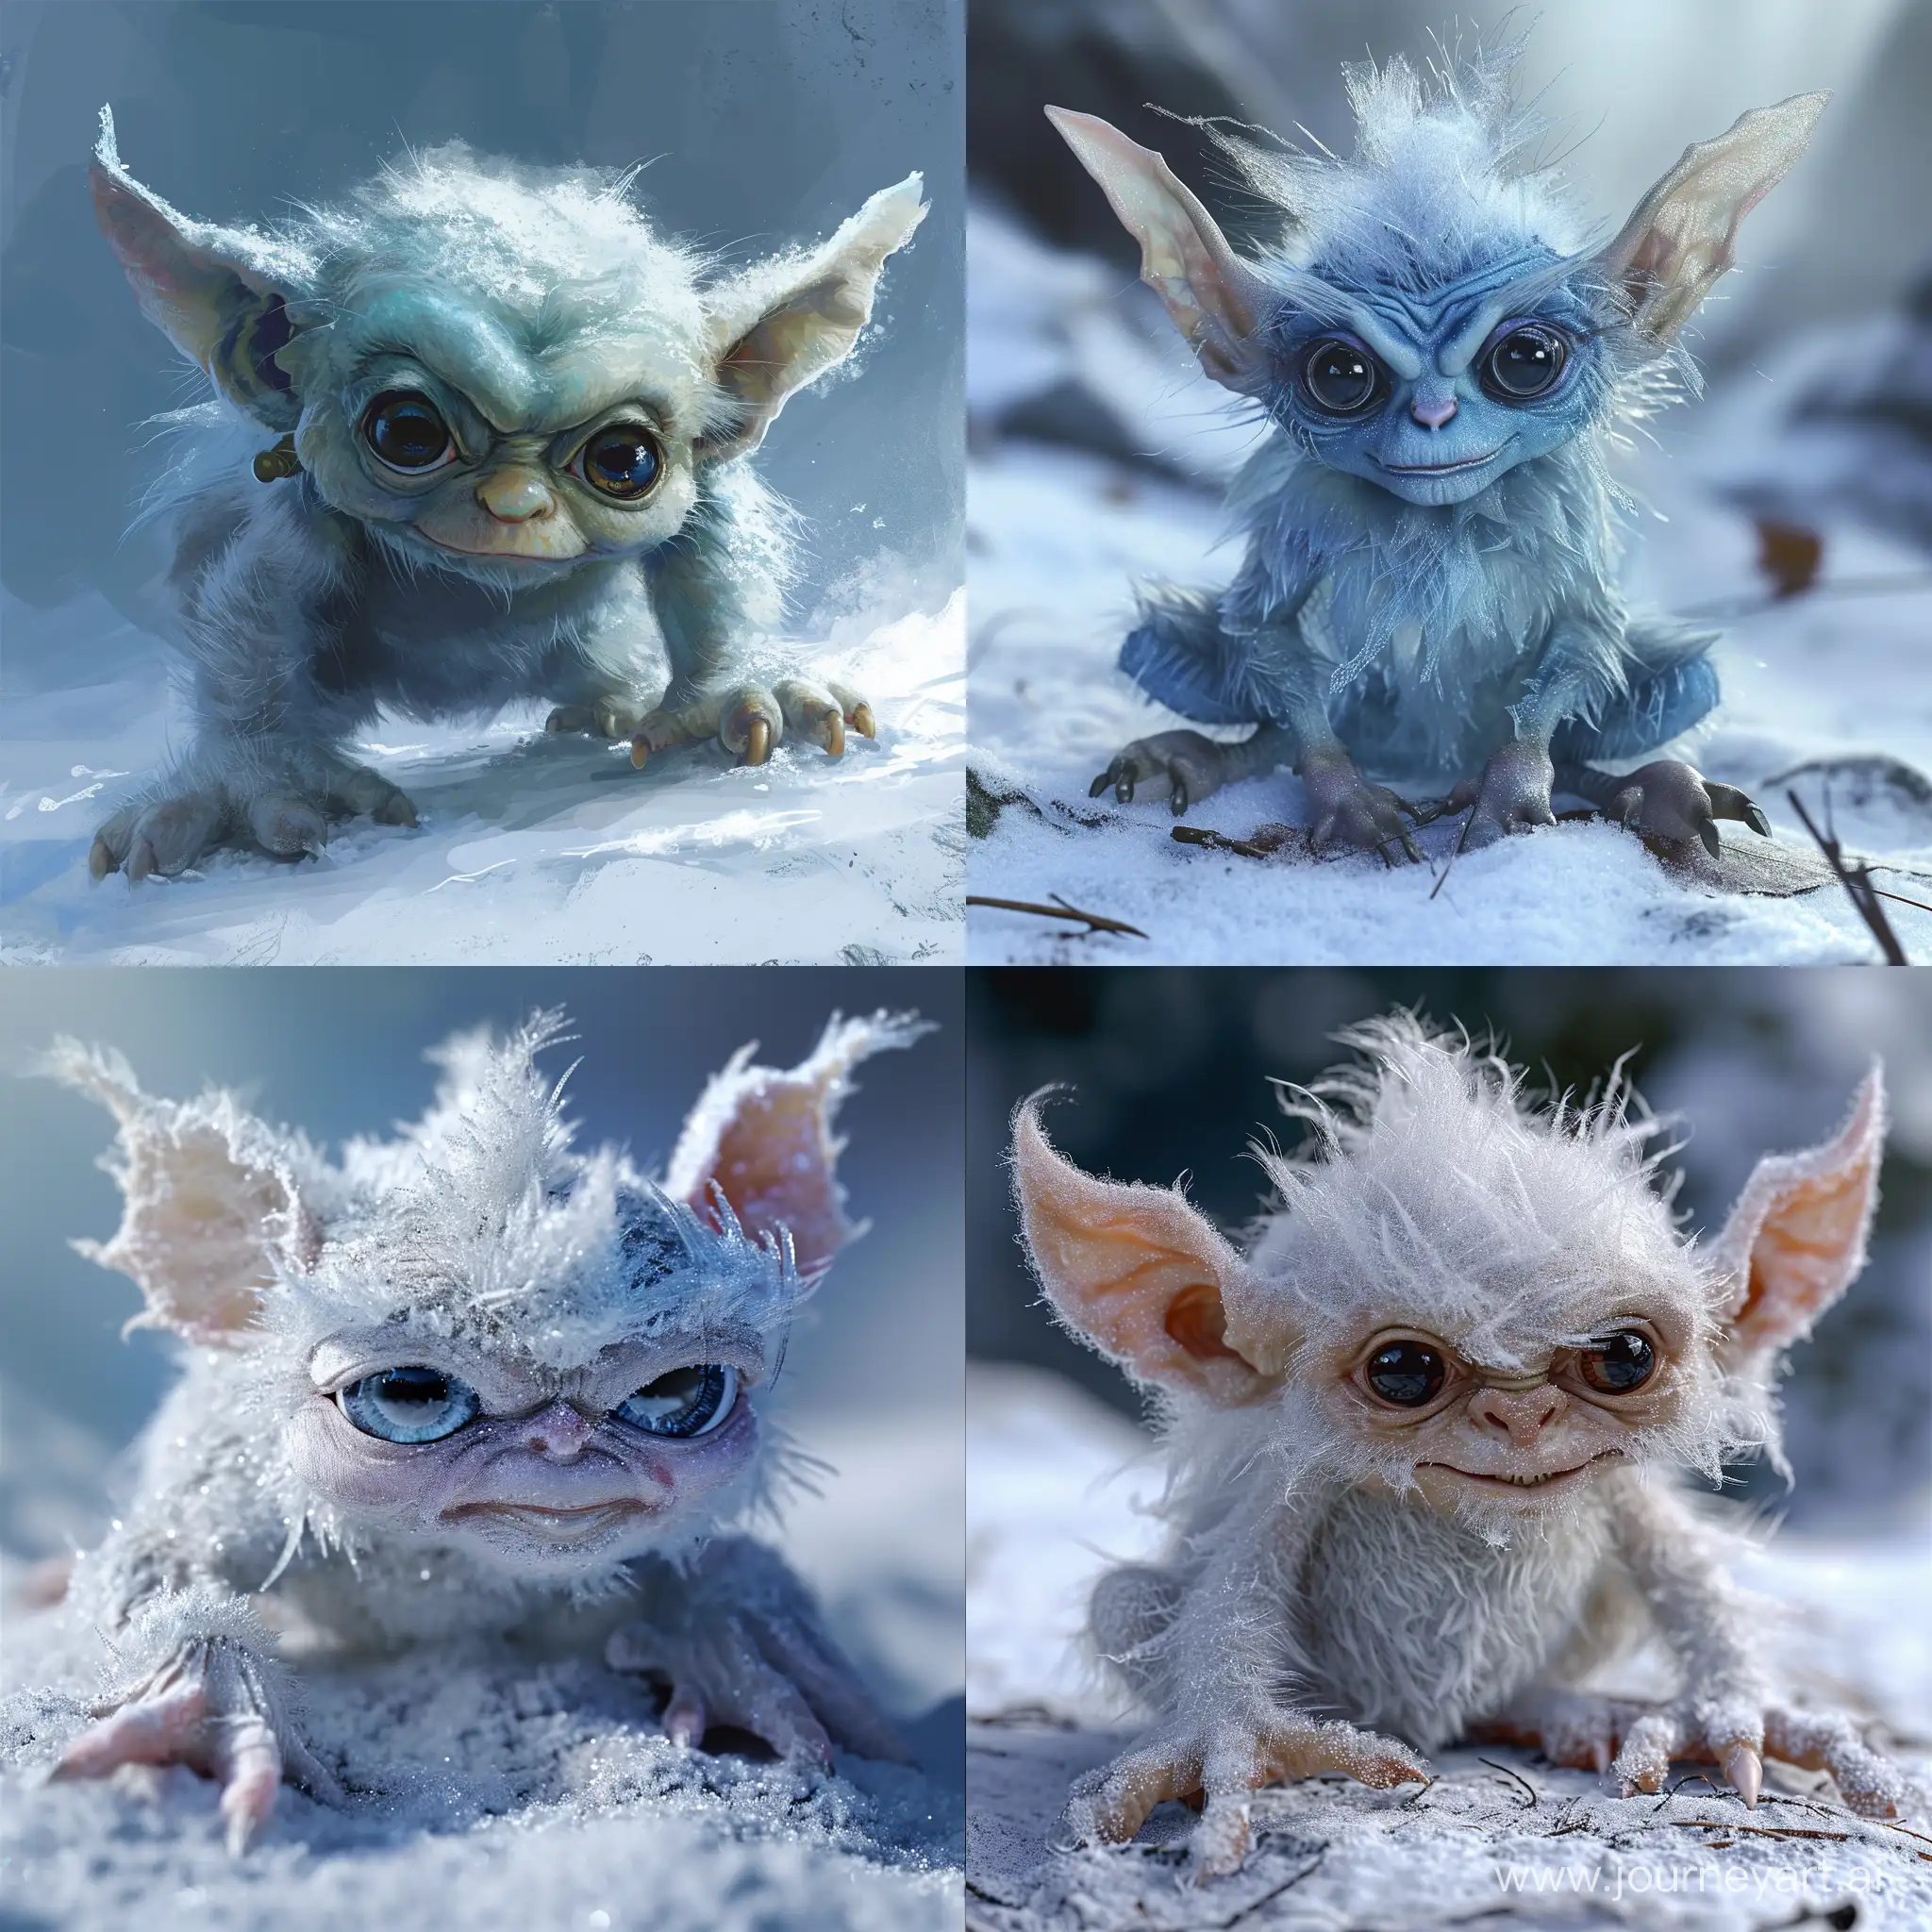 Enchanting-Ice-Gremlin-Goblin-Artwork